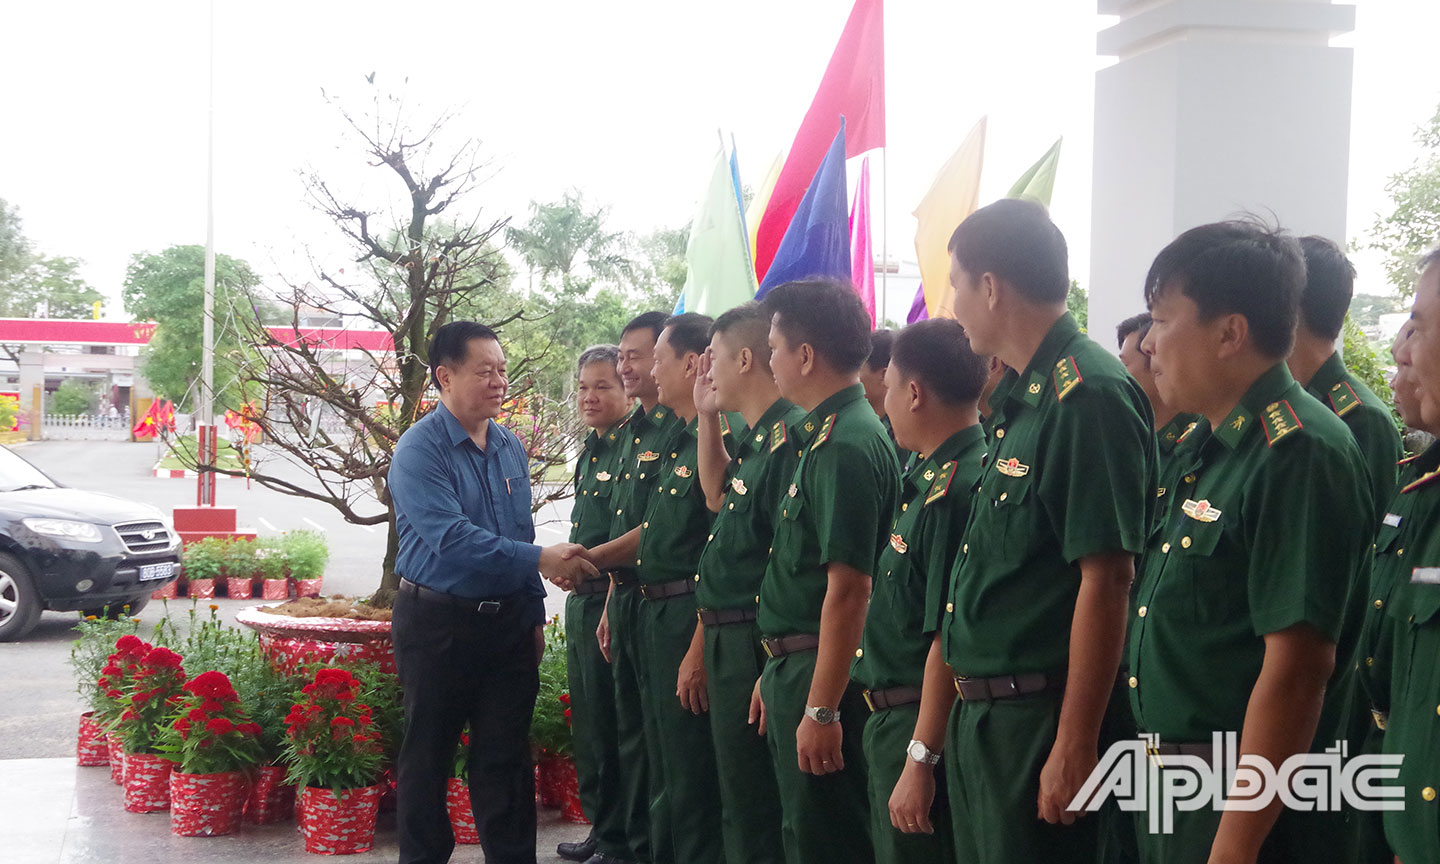 Đồng chí Thượng tướng Nguyễn Trọng Nghĩa, Bí thư Trung ương Đảng, Trưởng Ban Tuyên giáo Trung ương đến thăm và chúc tết cán bộ, chiến sĩ Bộ đội Biên phòng Tiền Giang